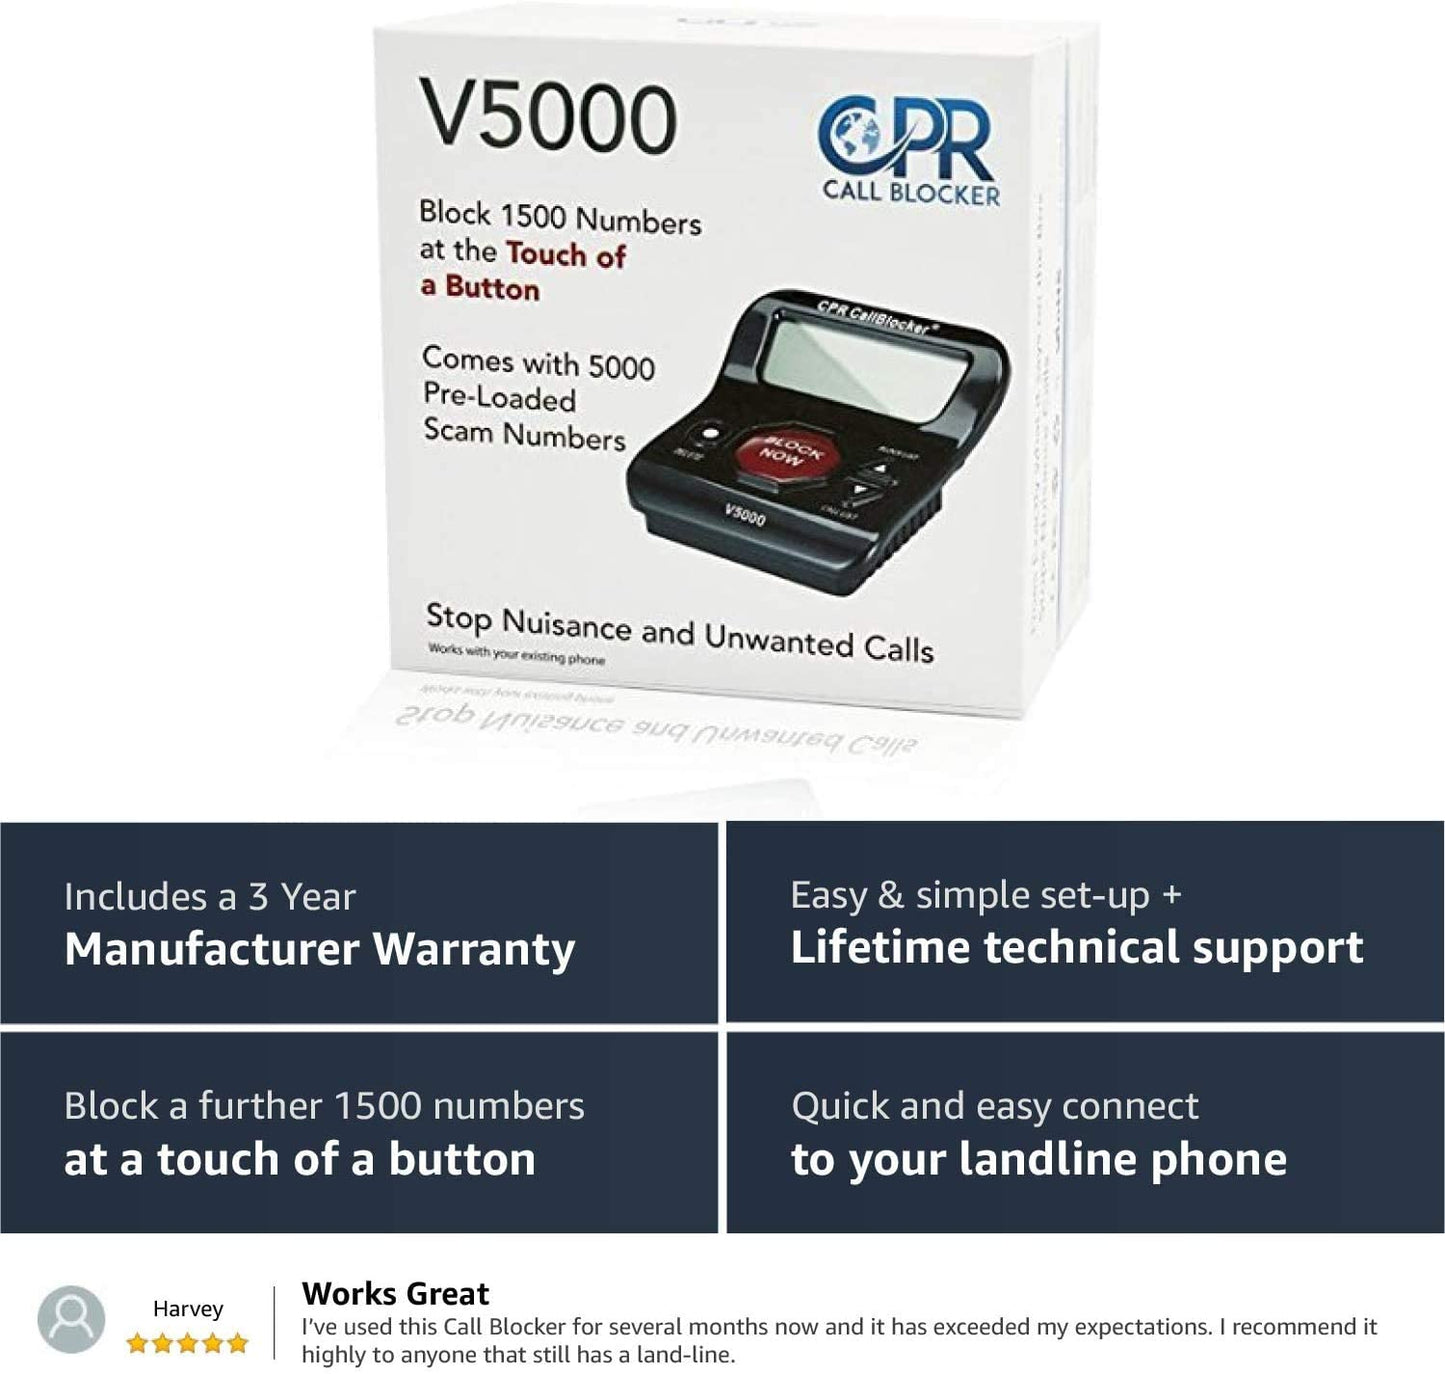 CPR Call Blocker V5000+